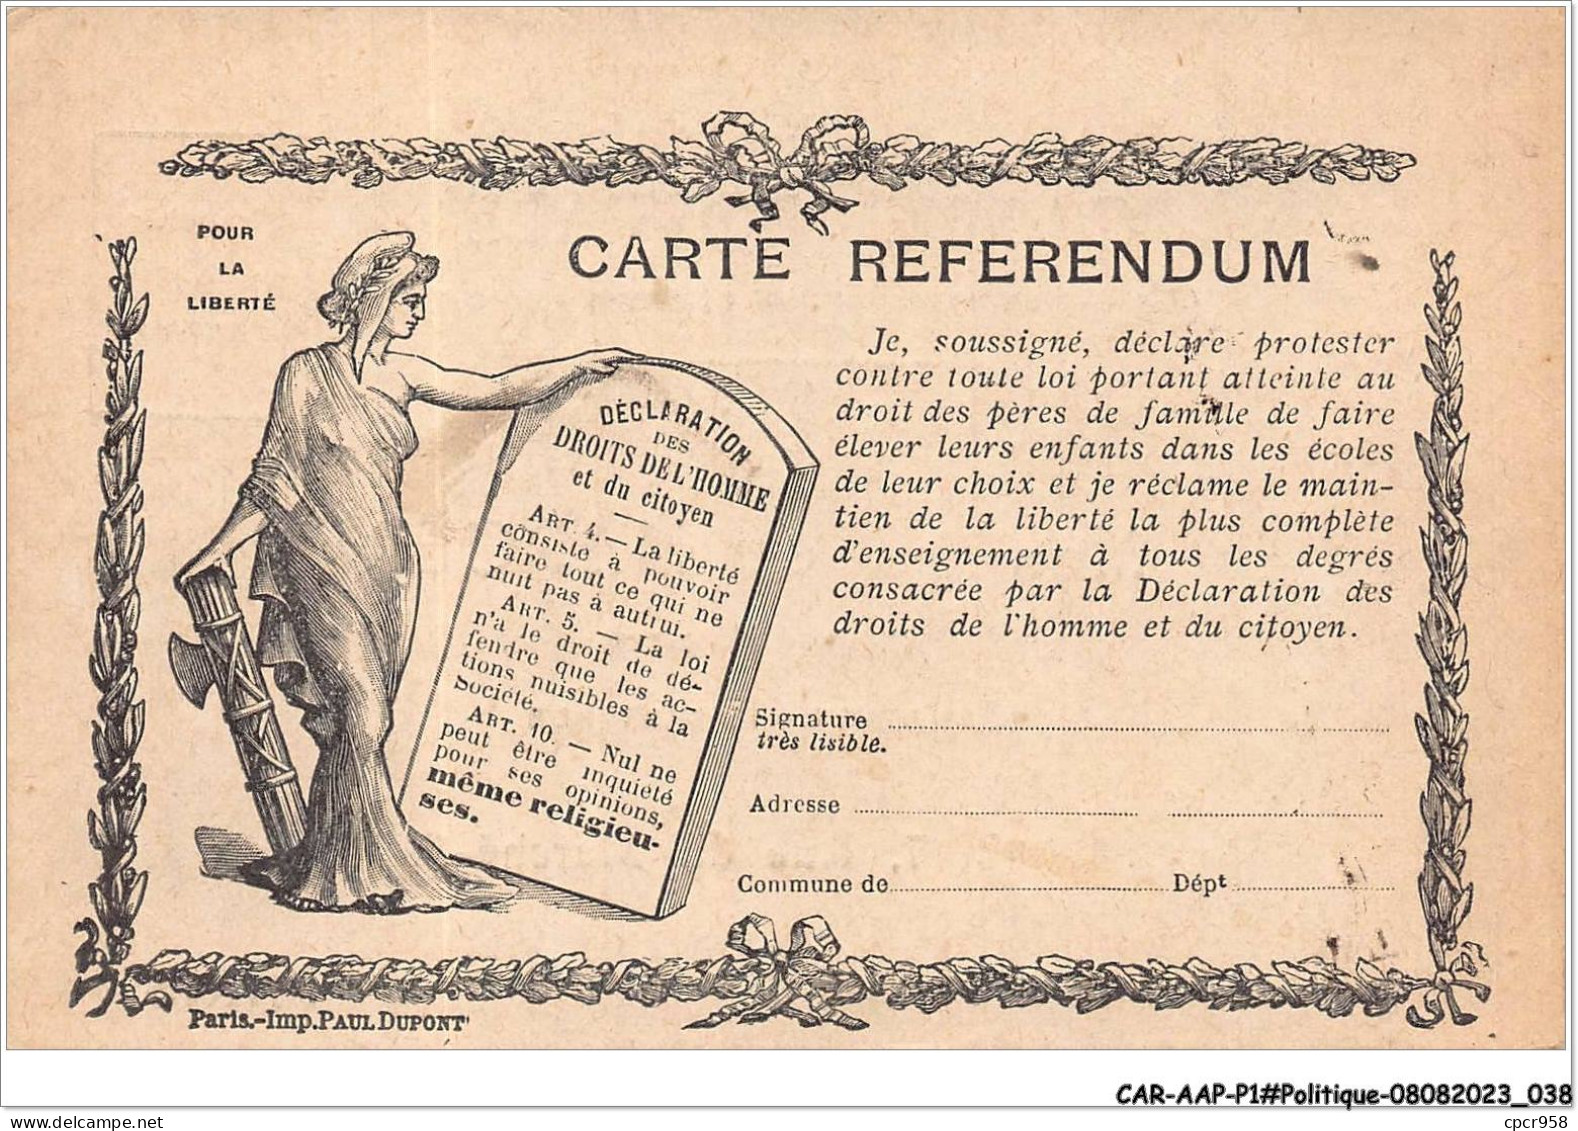 CAR-AAPP1-0020 - POLITIQUE - Carte Referendum - Parteien & Wahlen